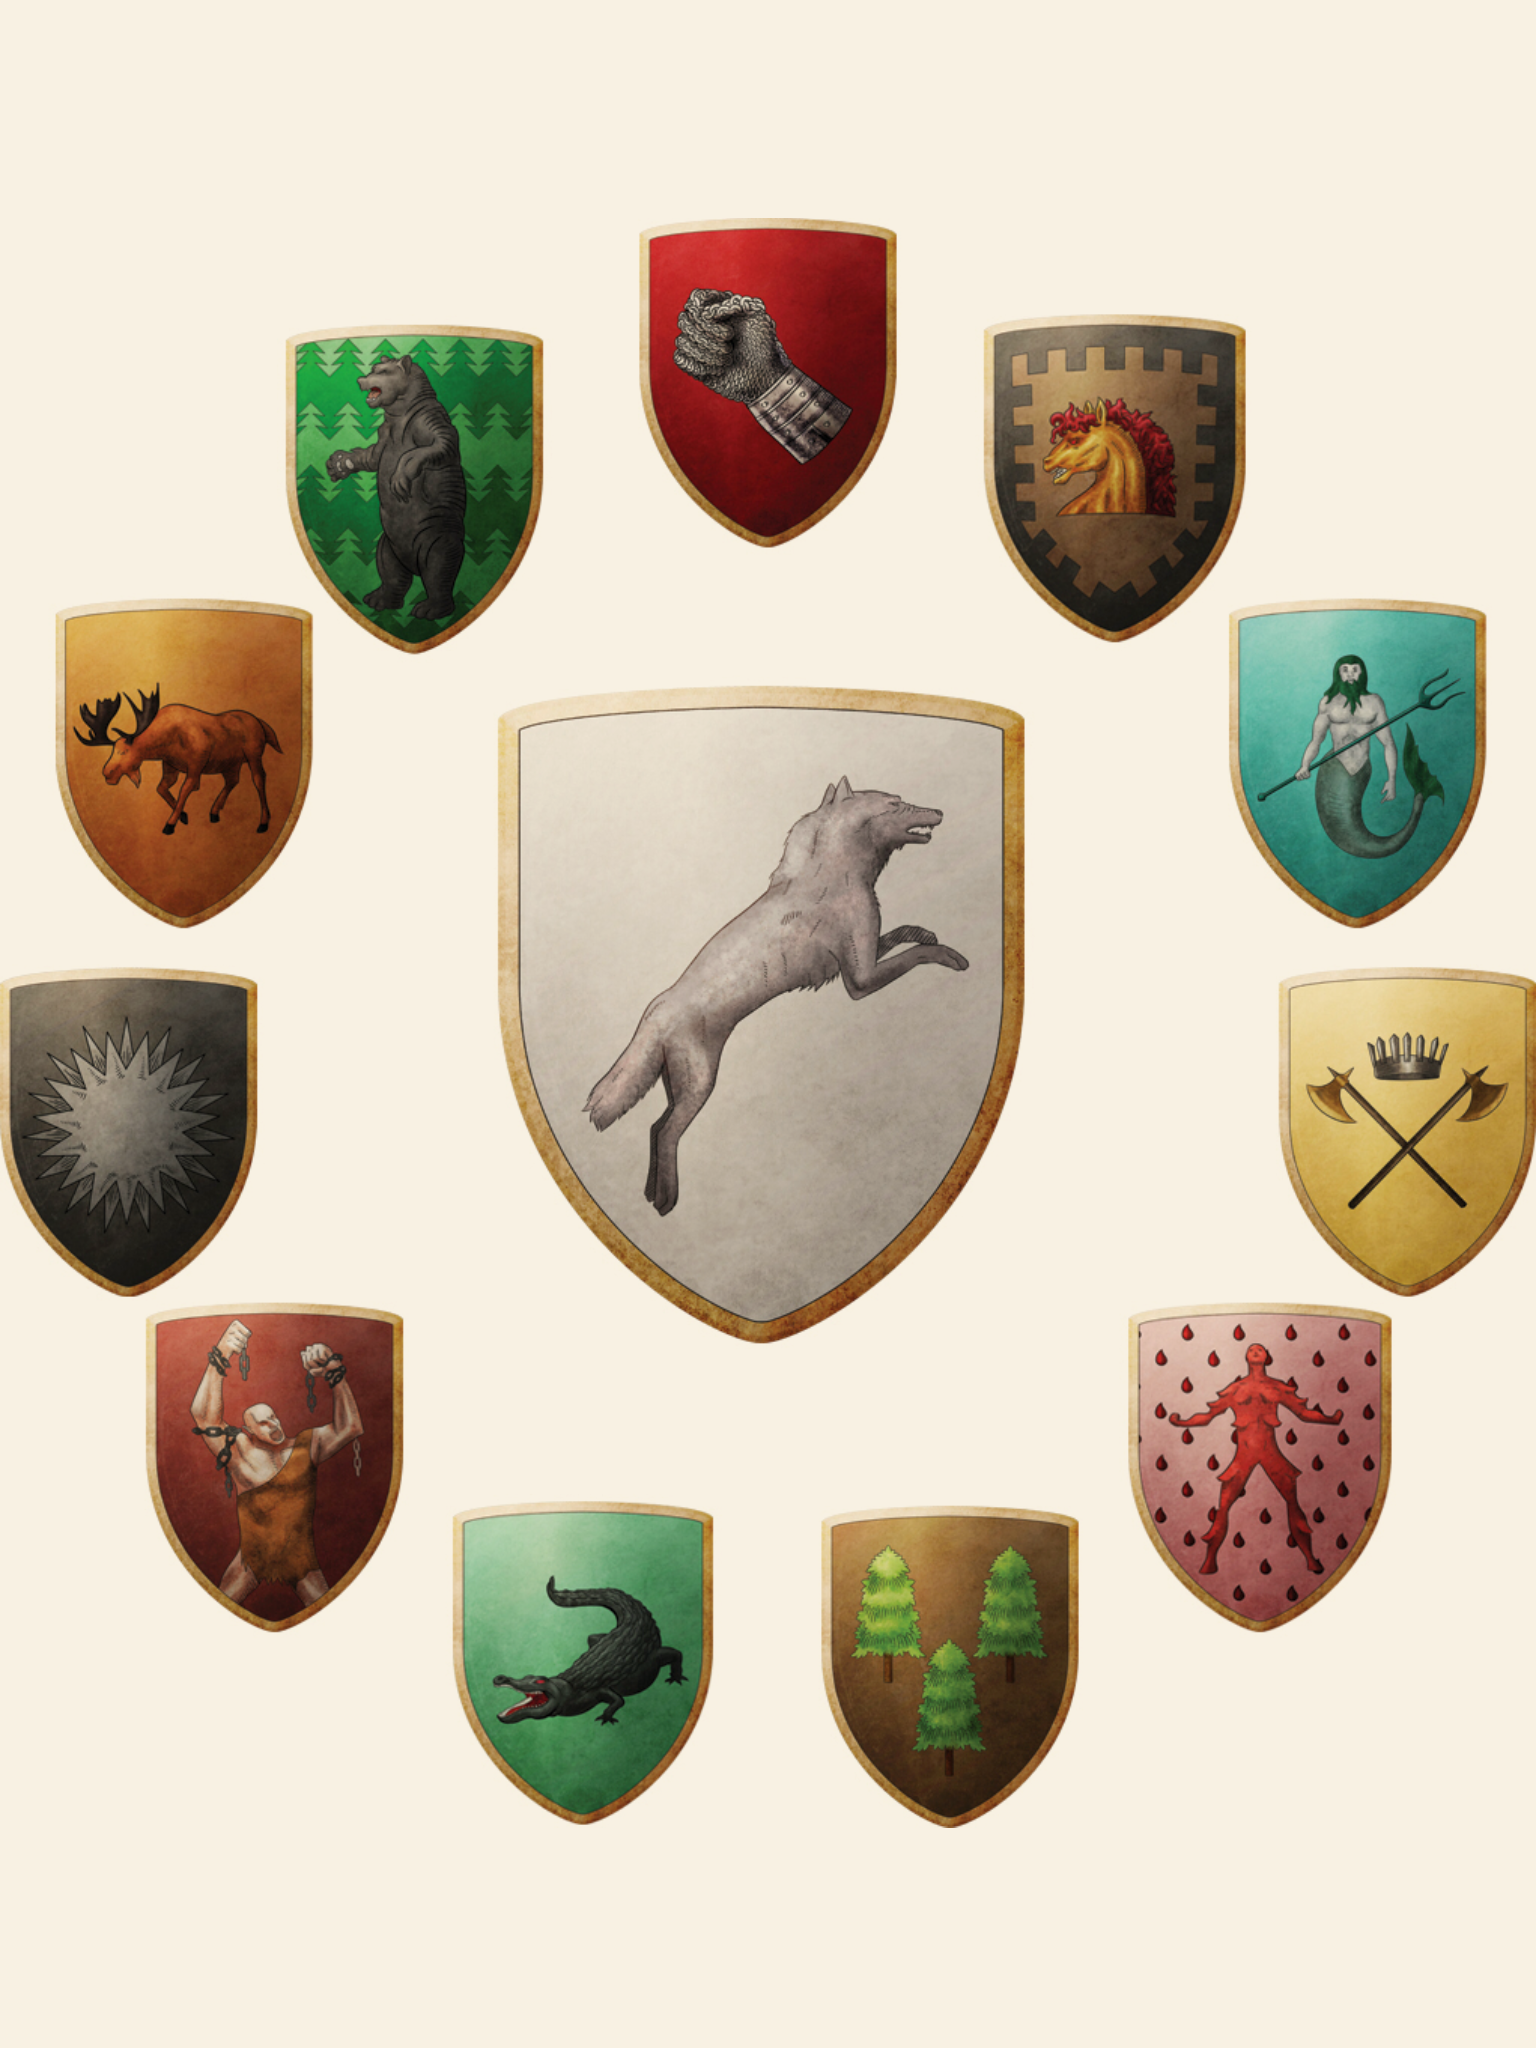 上图是《冰与火之歌的世界》中北境之王史塔克家族主要封臣的家徽